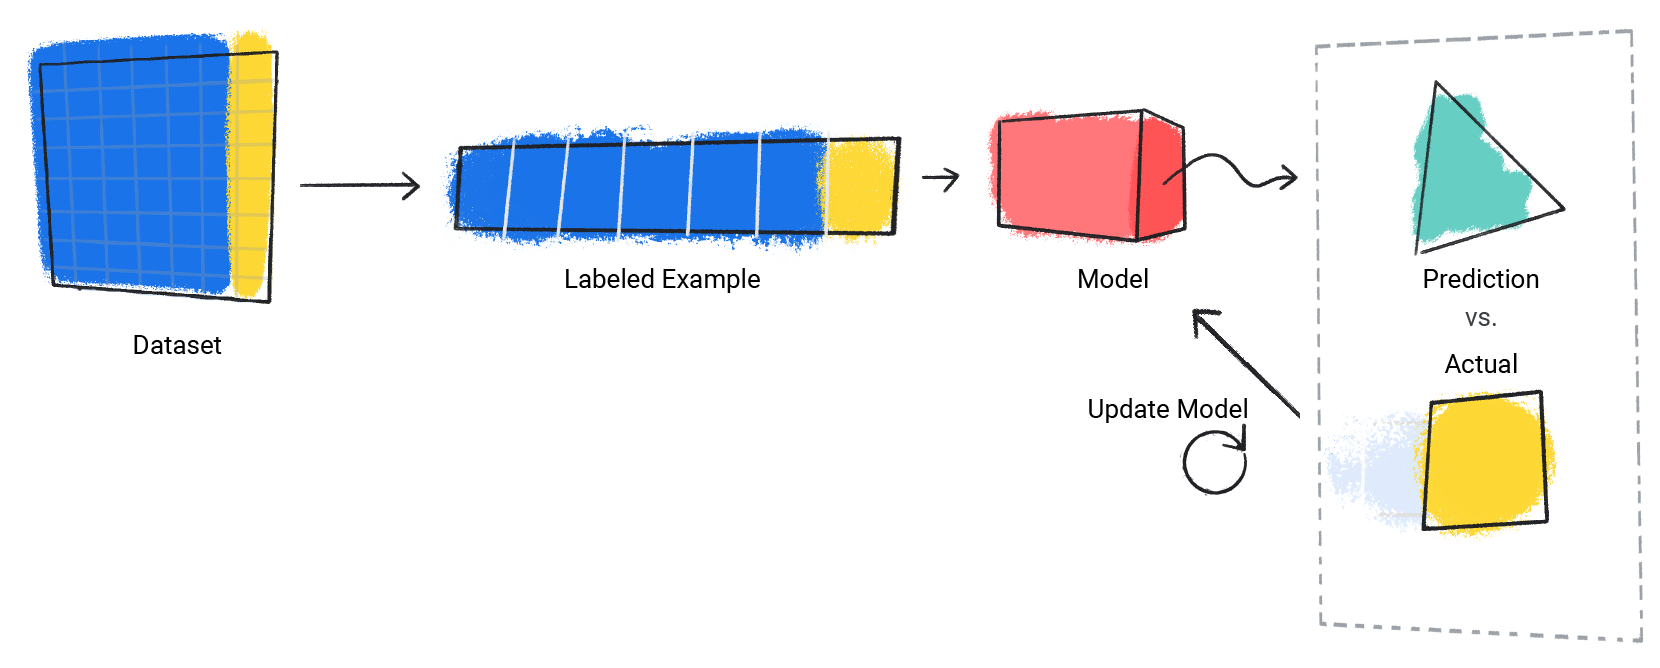 תמונה של מודל שחוזר על תהליך החיזוי שלו לעומת הערך בפועל.